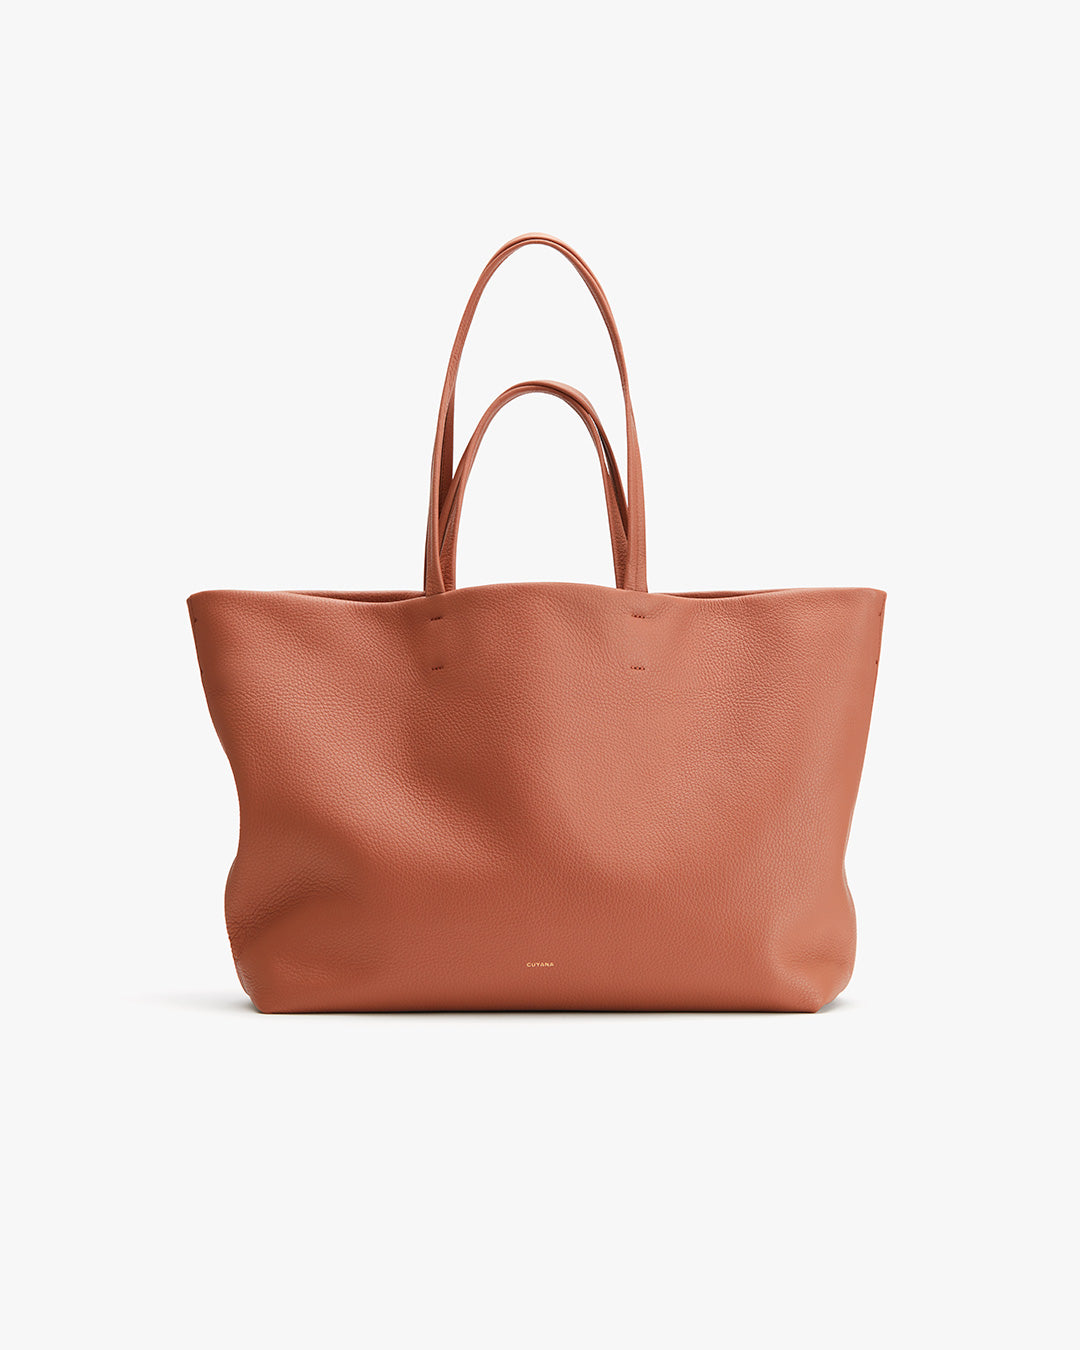 Bags – Cuyana